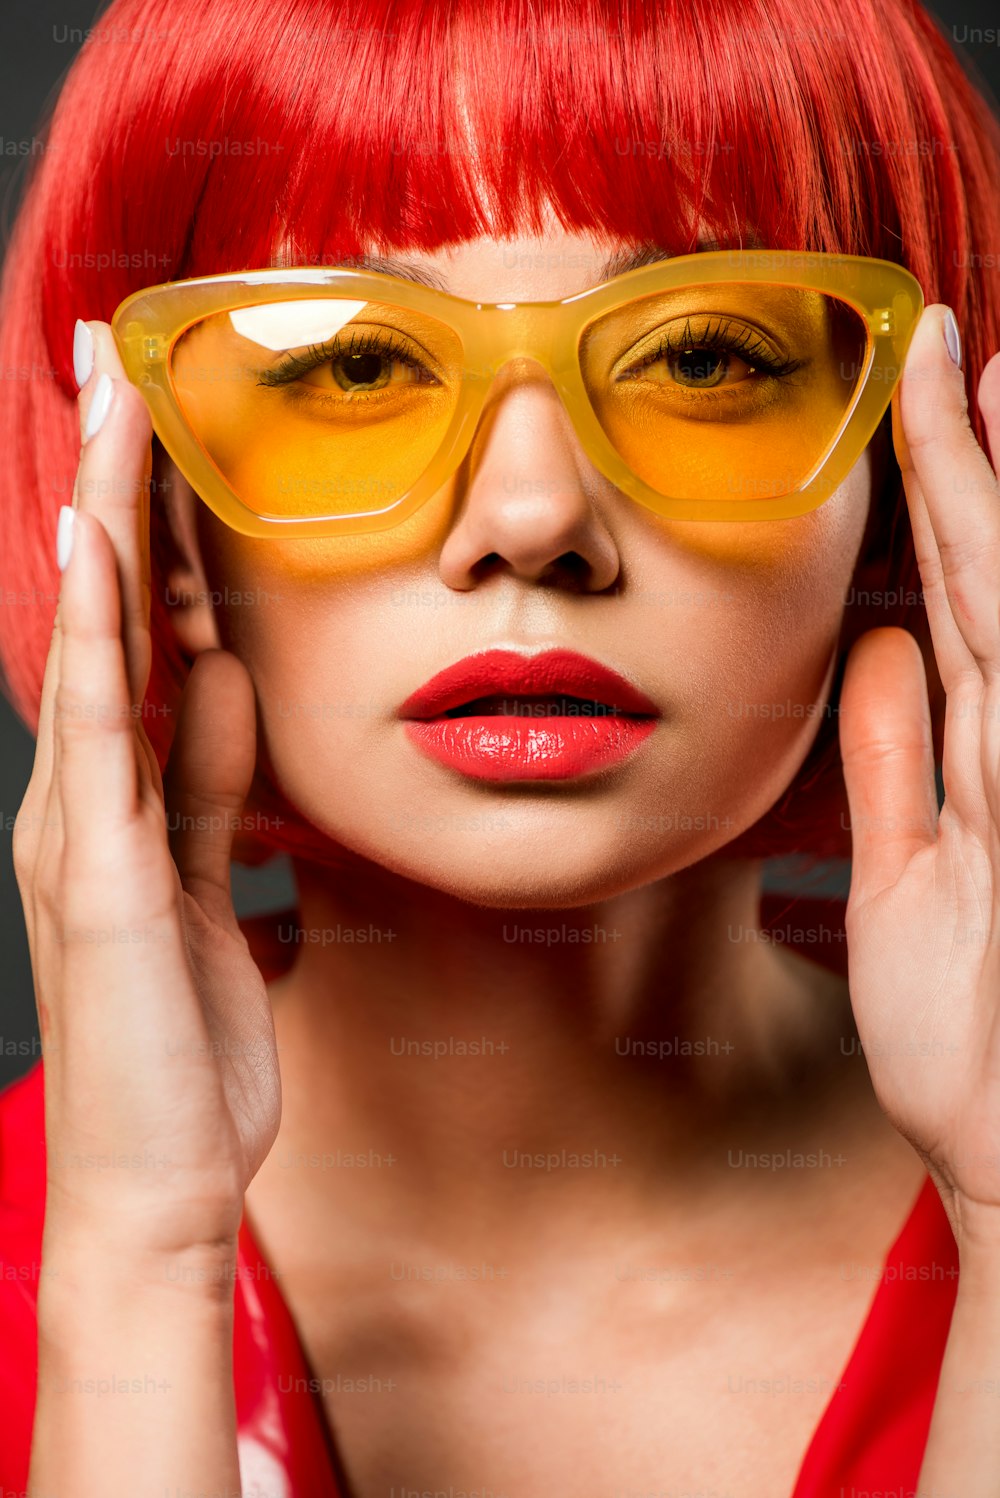 빈티지 노란색 선글라스를 끼고 카메라를 보고 있는 아름다운 젊은 여성의 클로즈업 초상화